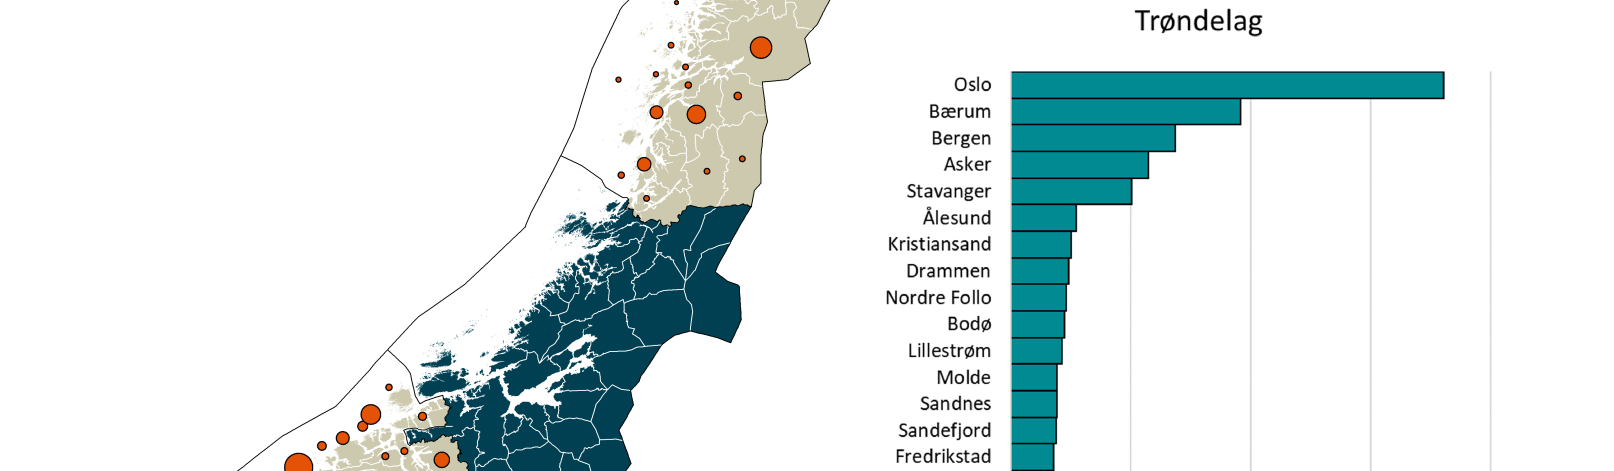 Faktisk, men ikke formelt bosatt i Trøndelag per 1.1.2022